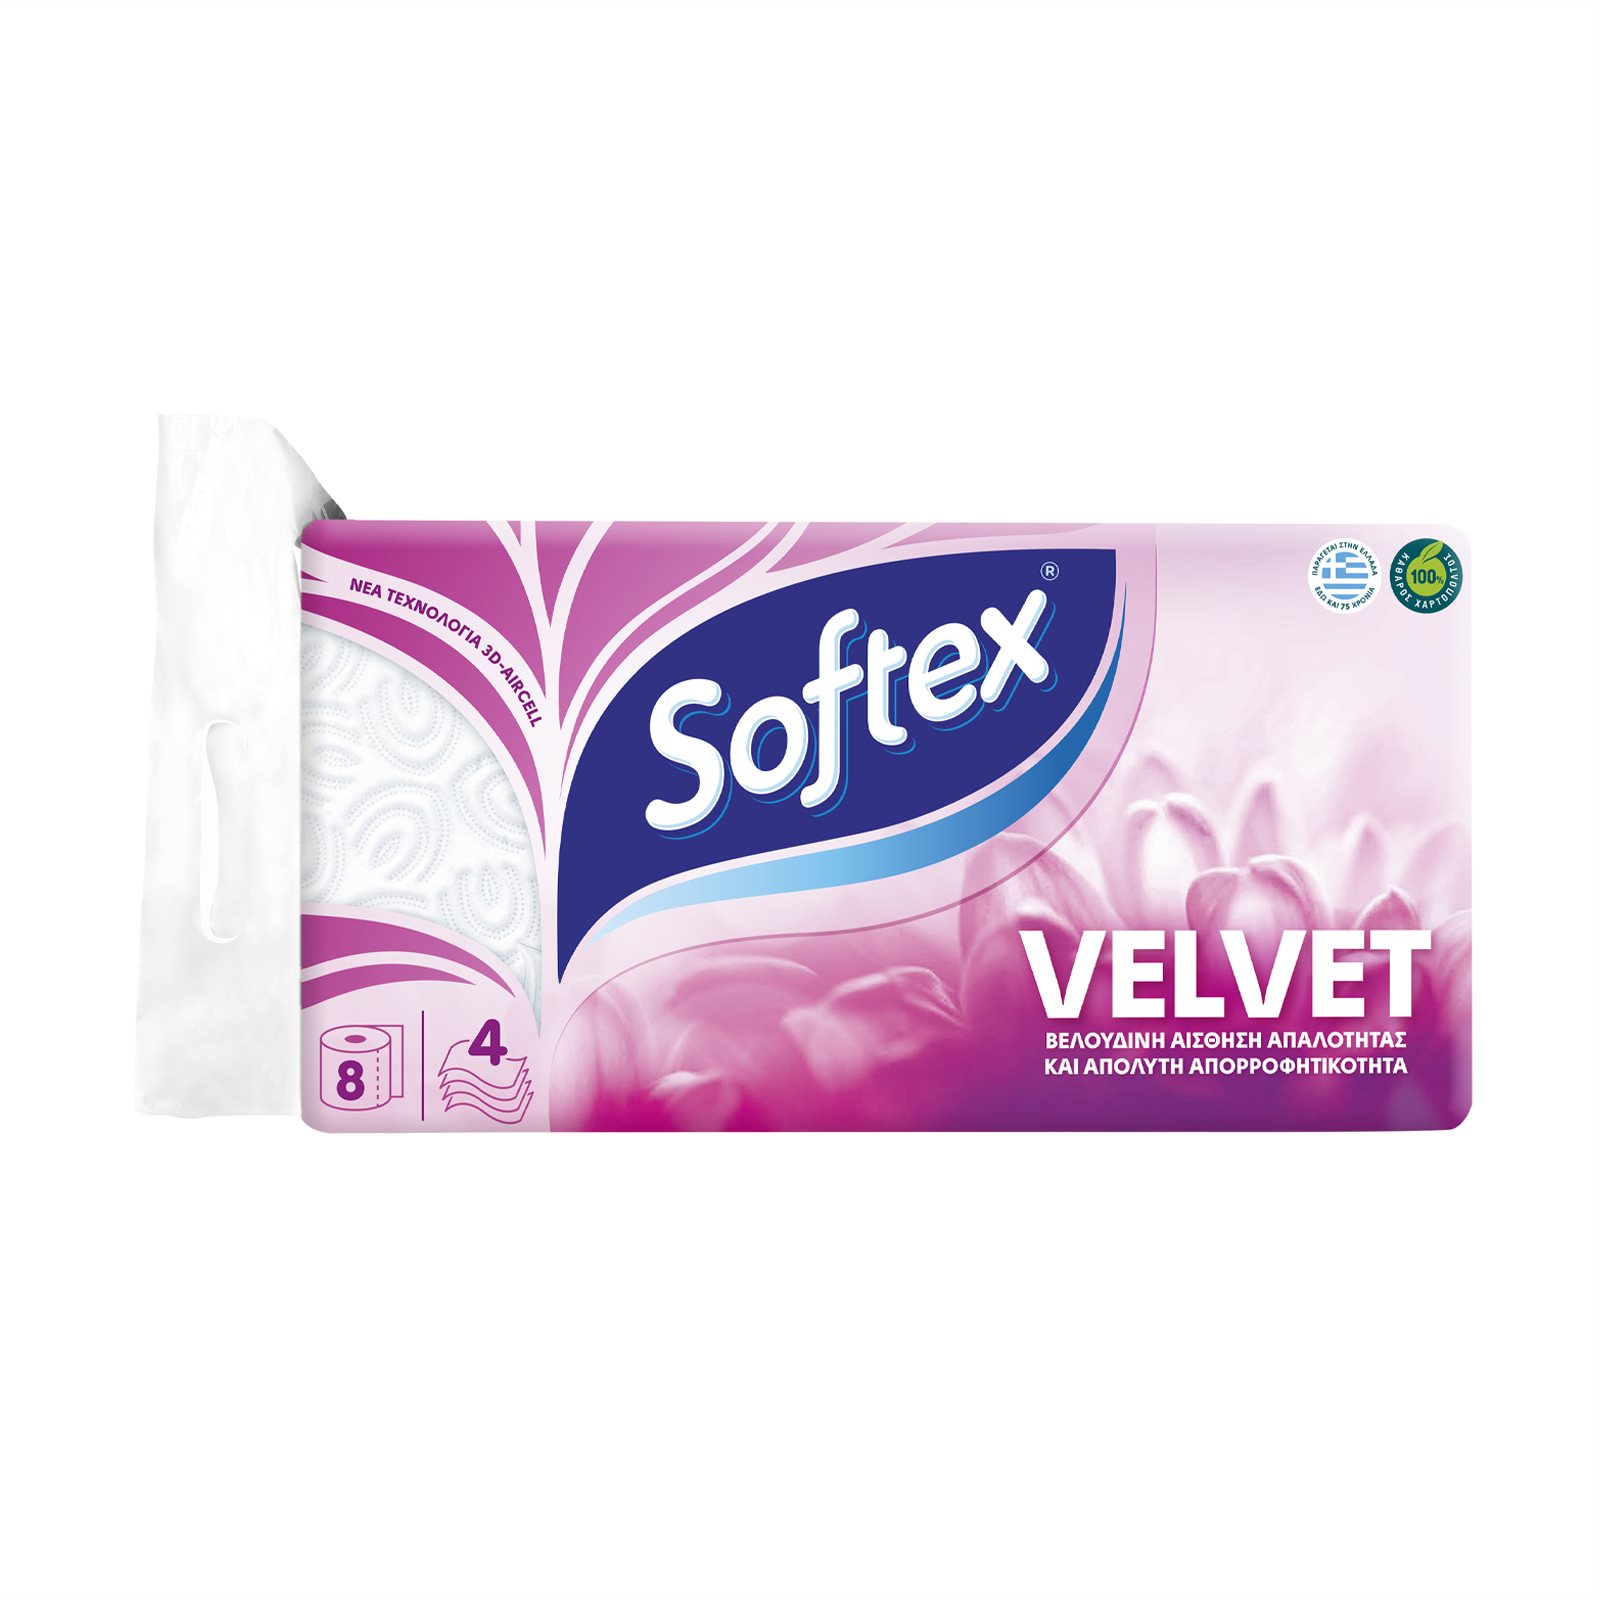 image of SOFTEX Velvet Χαρτί Υγείας 4 Φύλλων 8τεμ 824gr